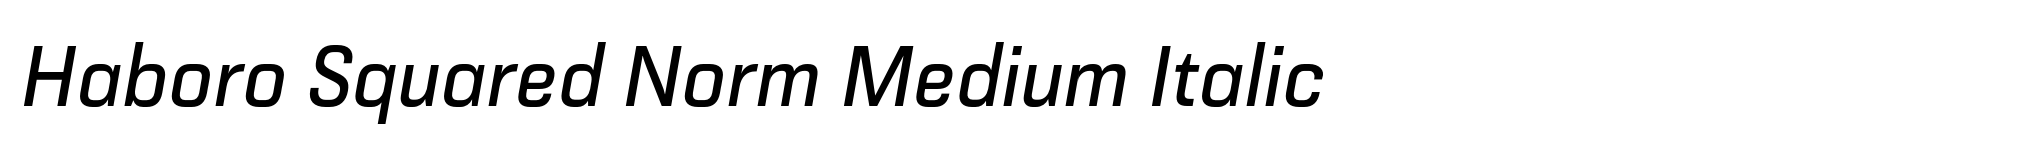 Haboro Squared Norm Medium Italic image